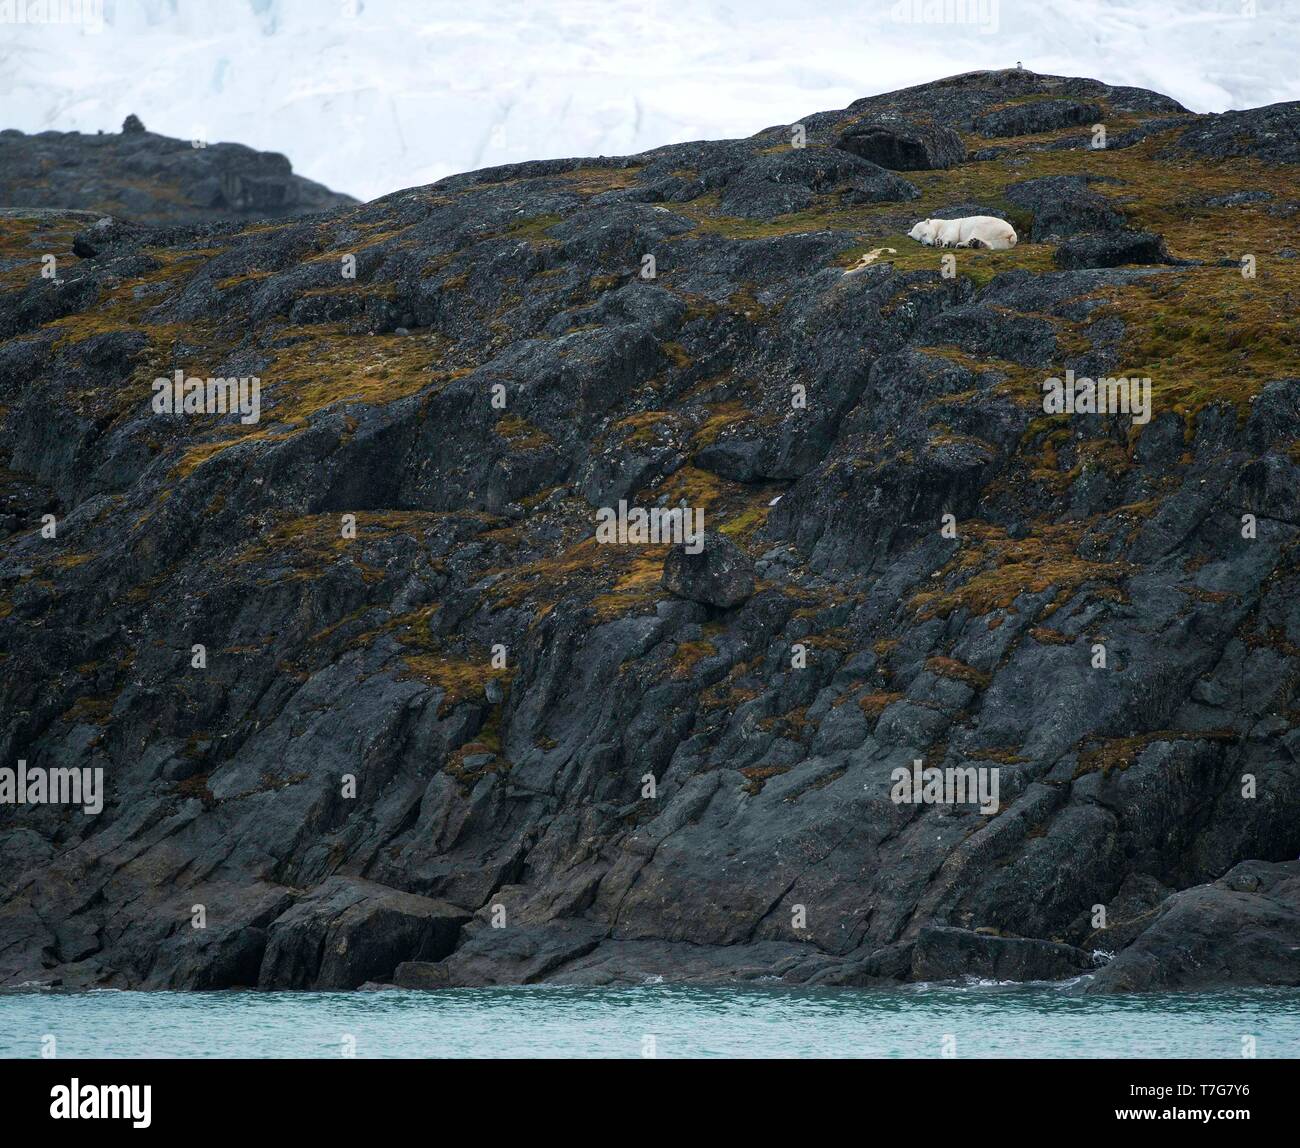 Polar Bear (Ursus marinus) sleeping on land on Spitsbergen, arctic Norway. Stock Photo